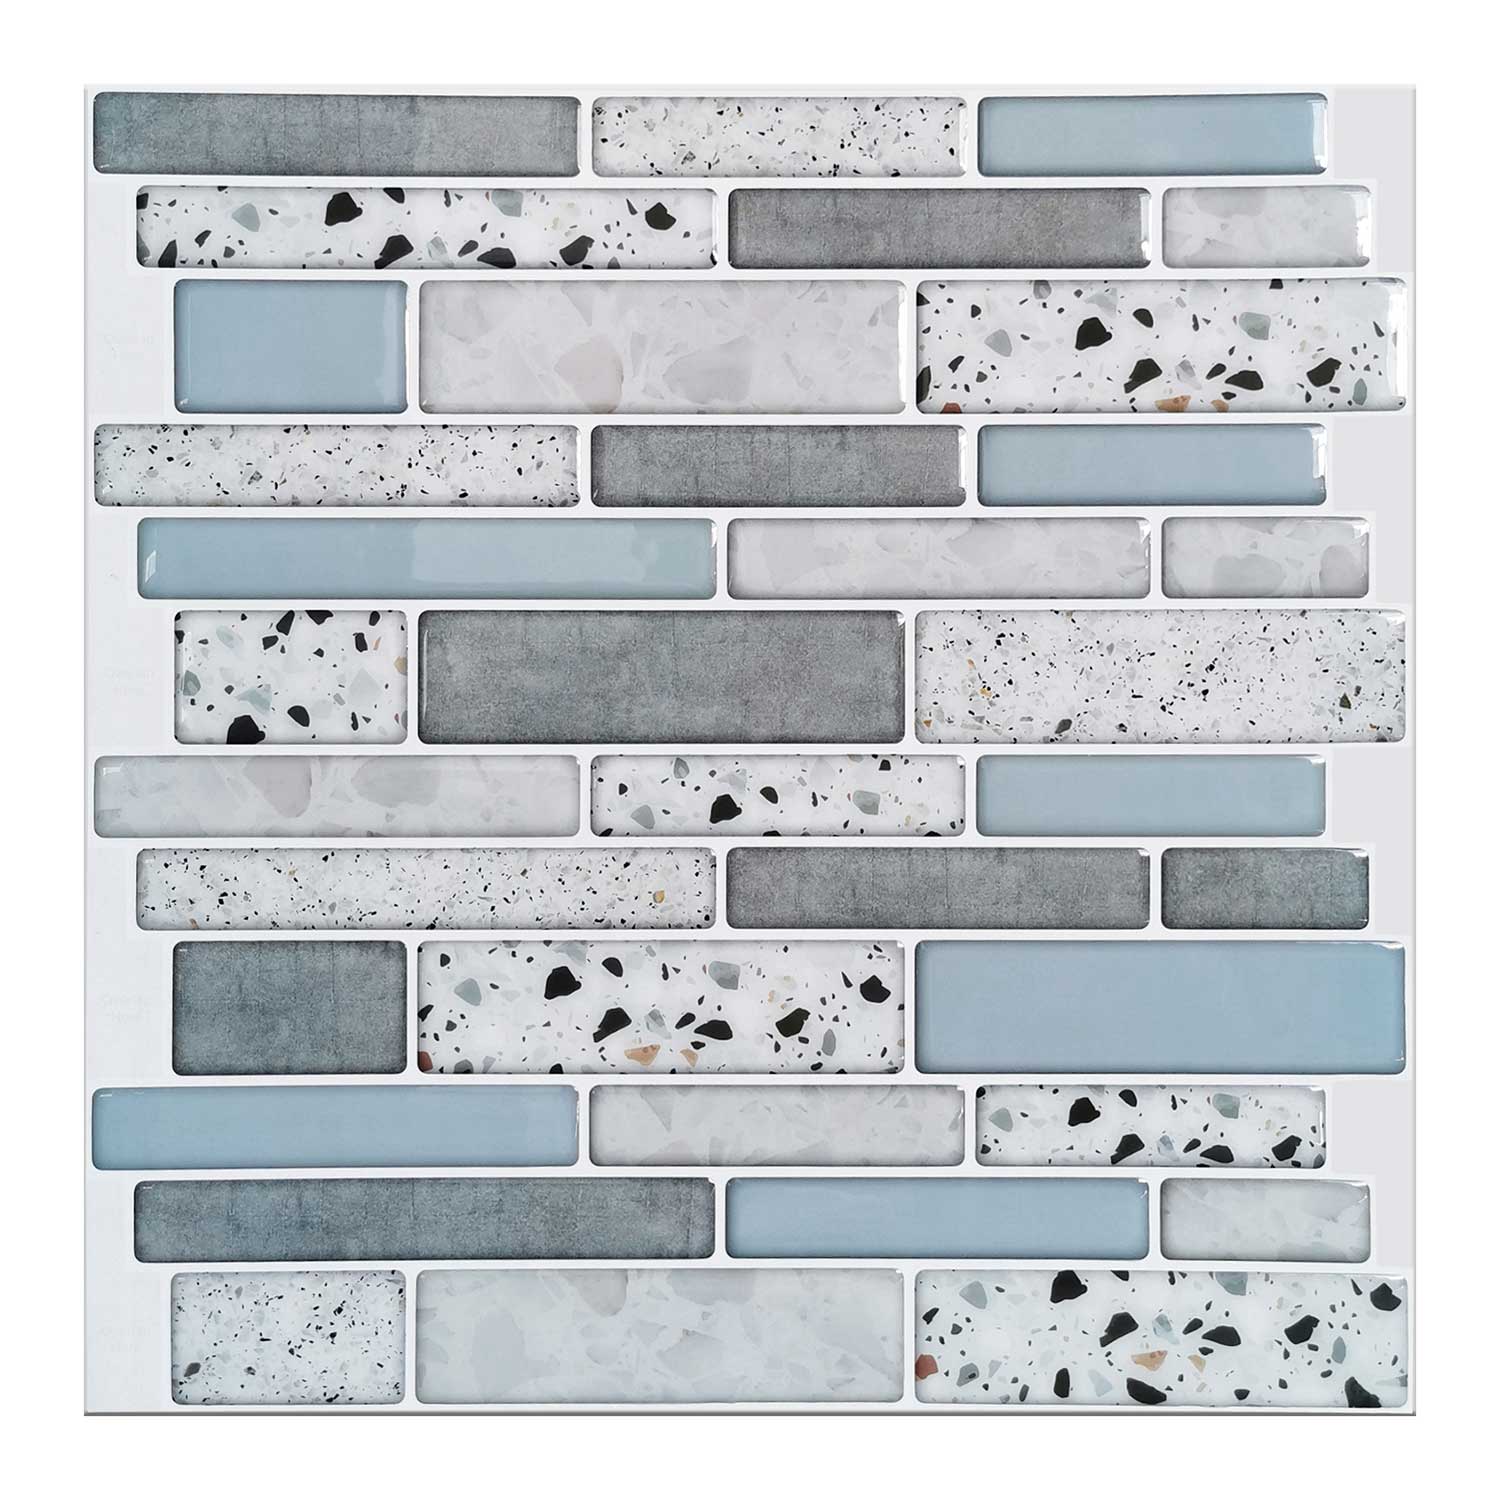 Art3d 10-Sheet Peel and Stick Backsplash Tile for Kitchen in Stone Design